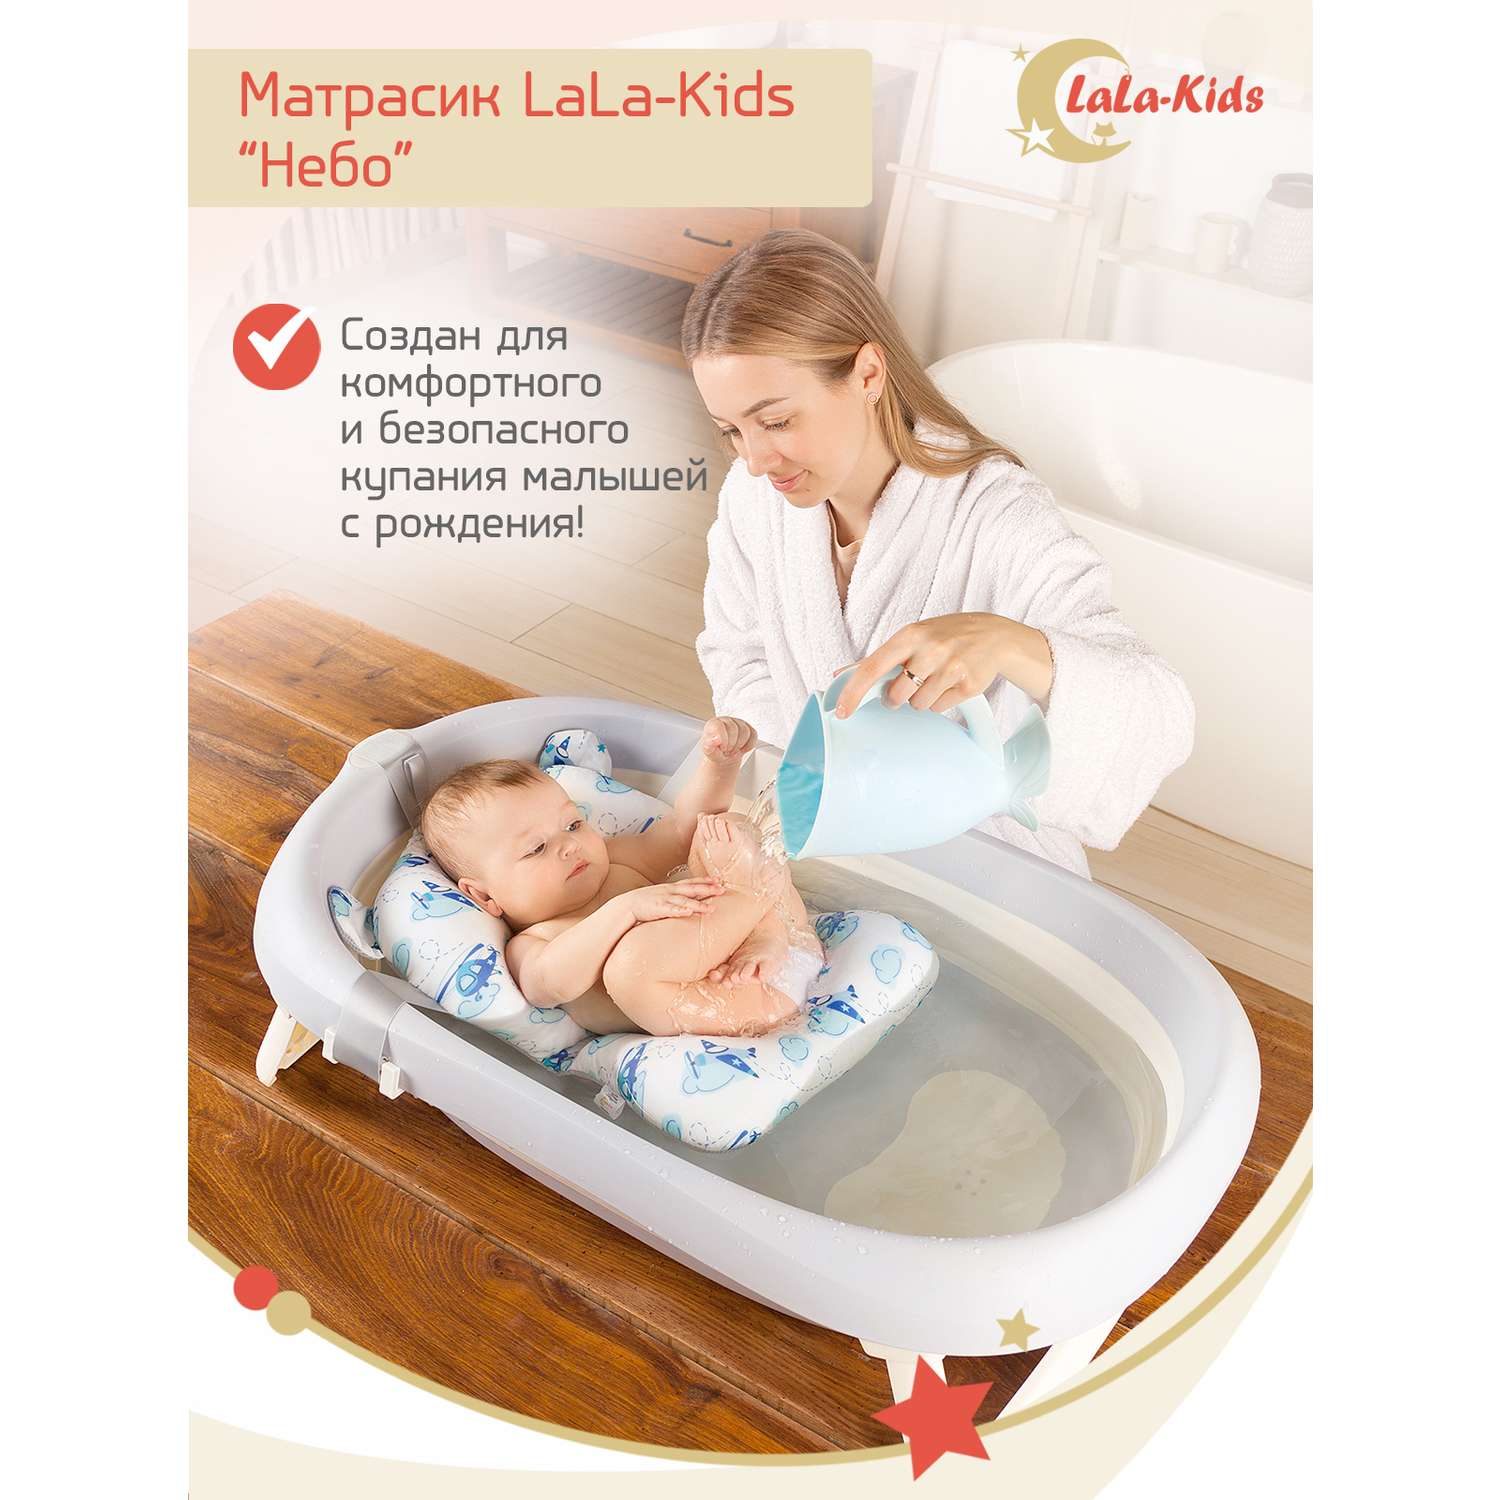 Матрас LaLa-Kids для купания новорожденных - фото 3